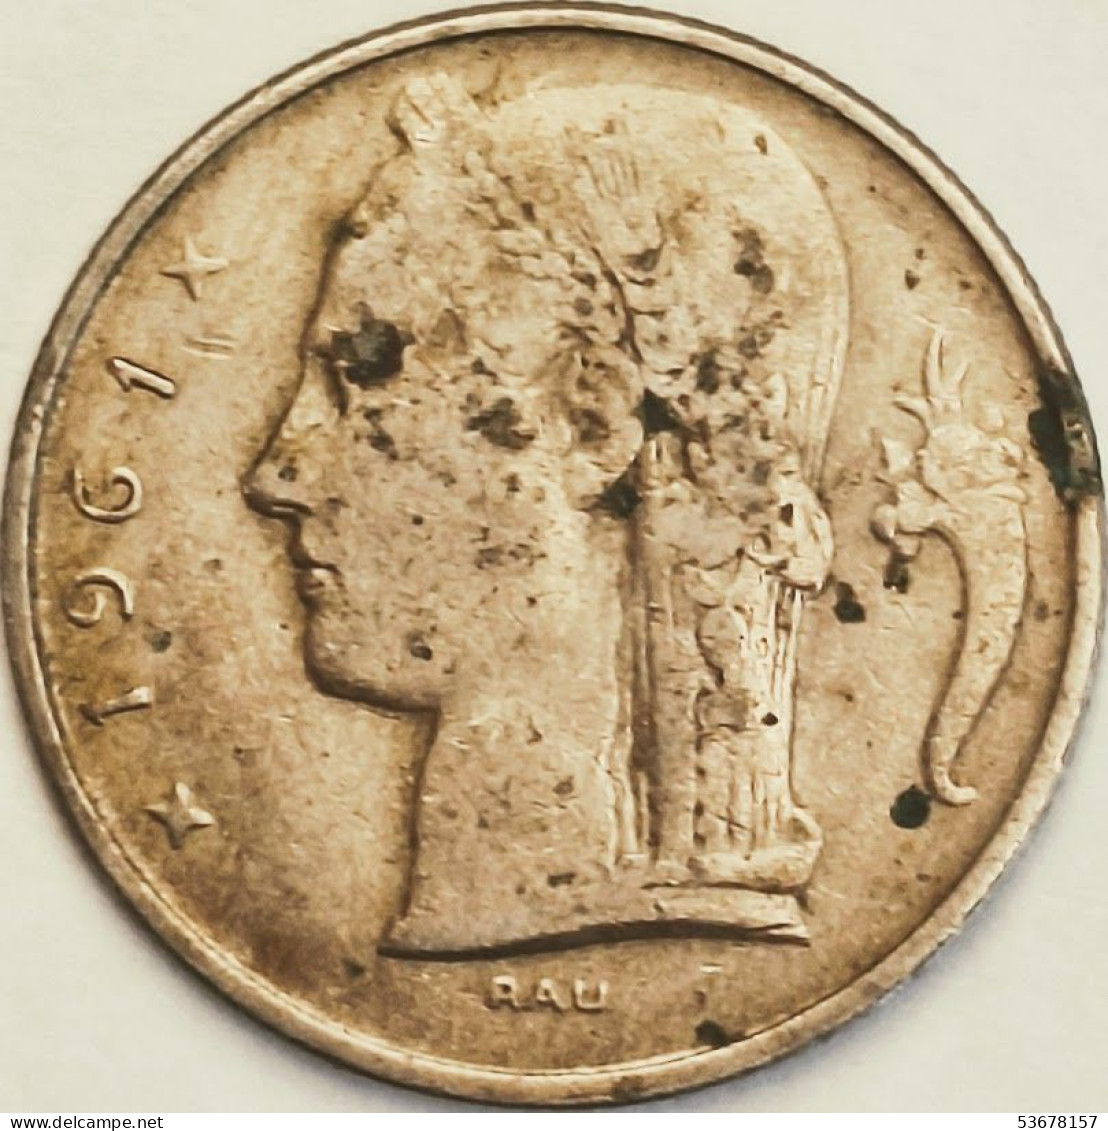 Belgium - 5 Francs 1961, KM# 135.1 (#3184) - 5 Francs